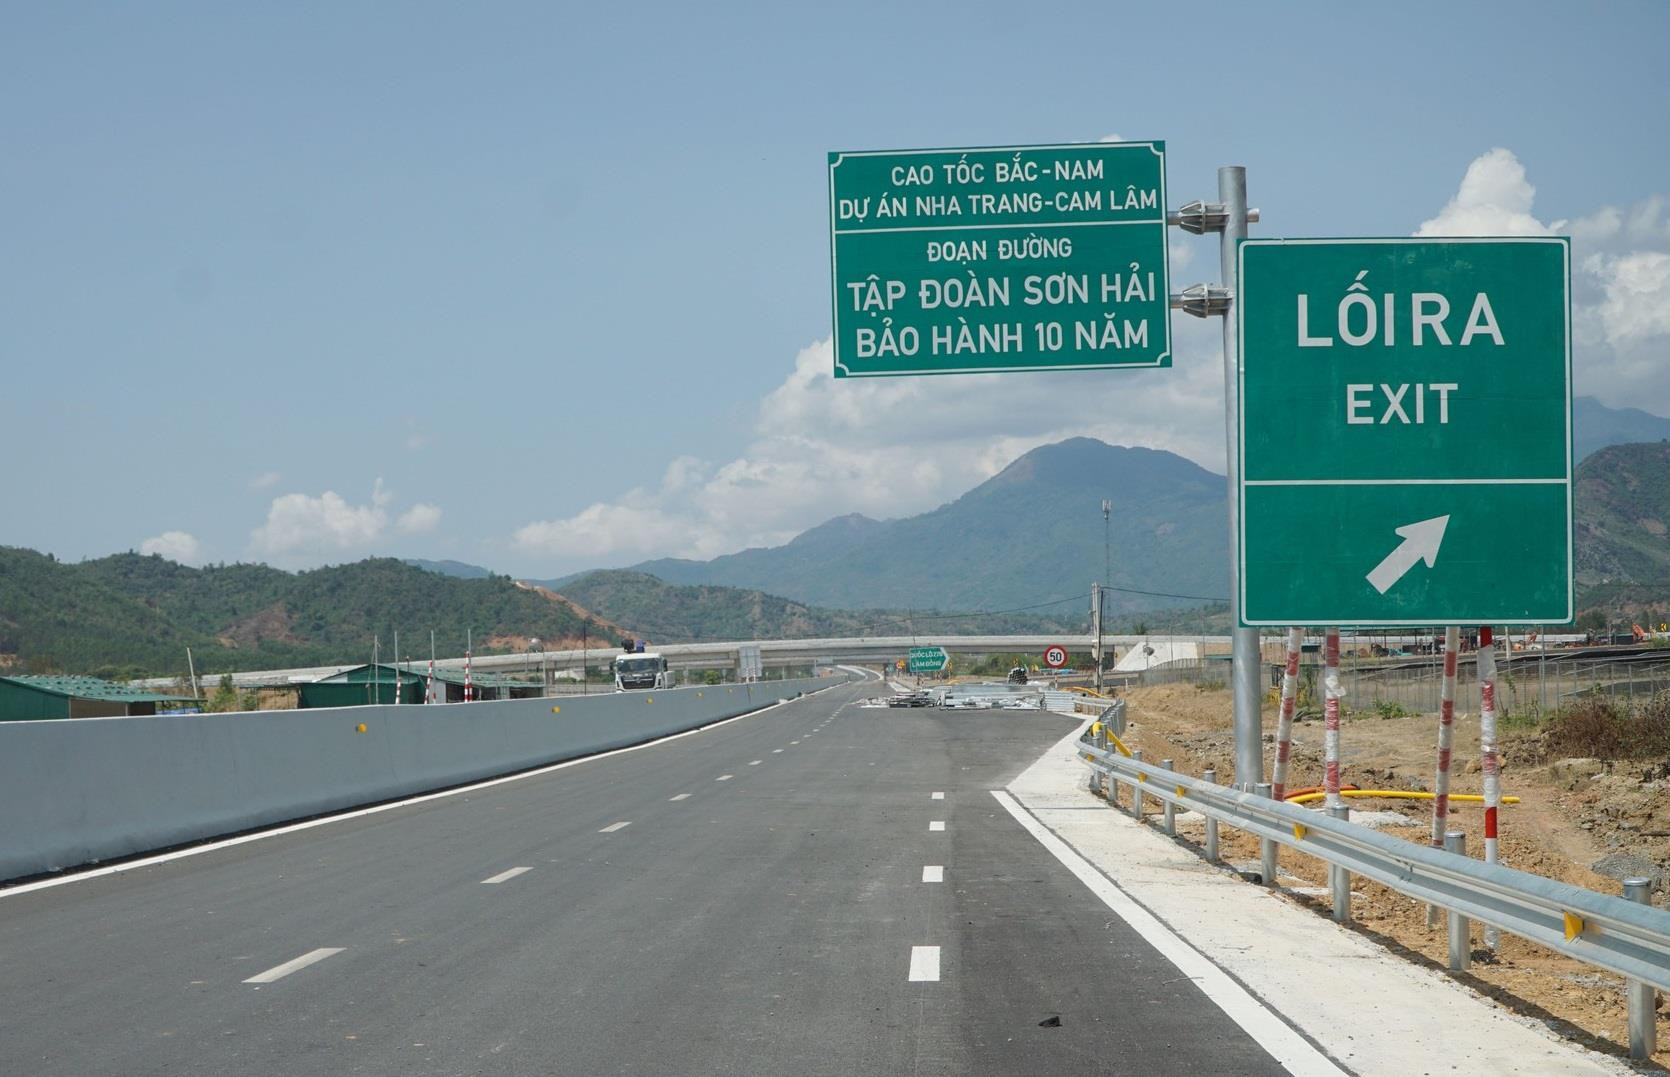 Tập đoàn Sơn Hải được chấp thuận lập báo cáo nghiên cứu tiền khả thi dự án xây dựng đường bộ cao tốc Cam Lộ - Lao Bảo, Quảng Trị 